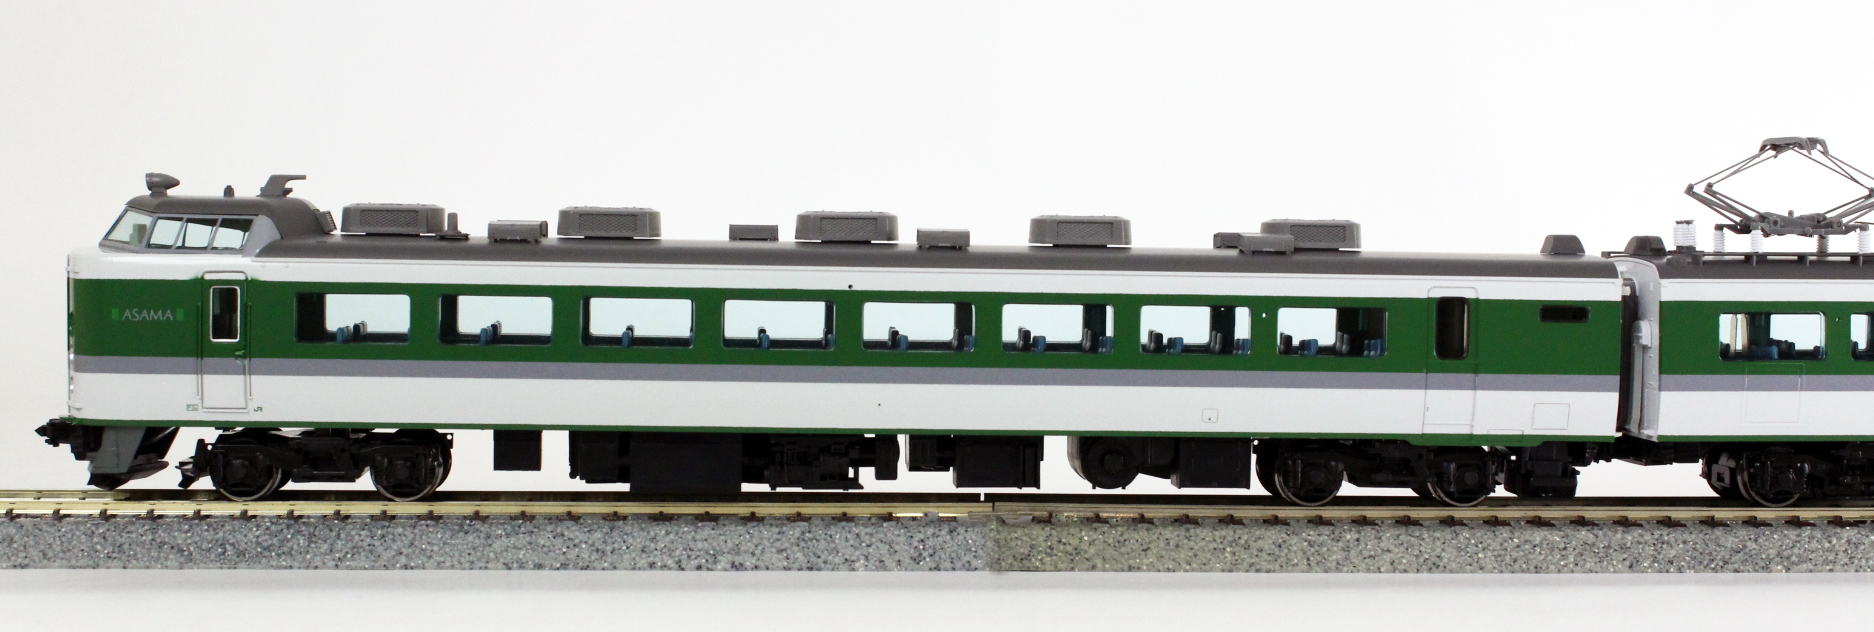 低価新作登場TOMIX トミックス 98248 JR489系特急電車 あさま 基本セット 5両 N ジャンク K6220185 特急形電車